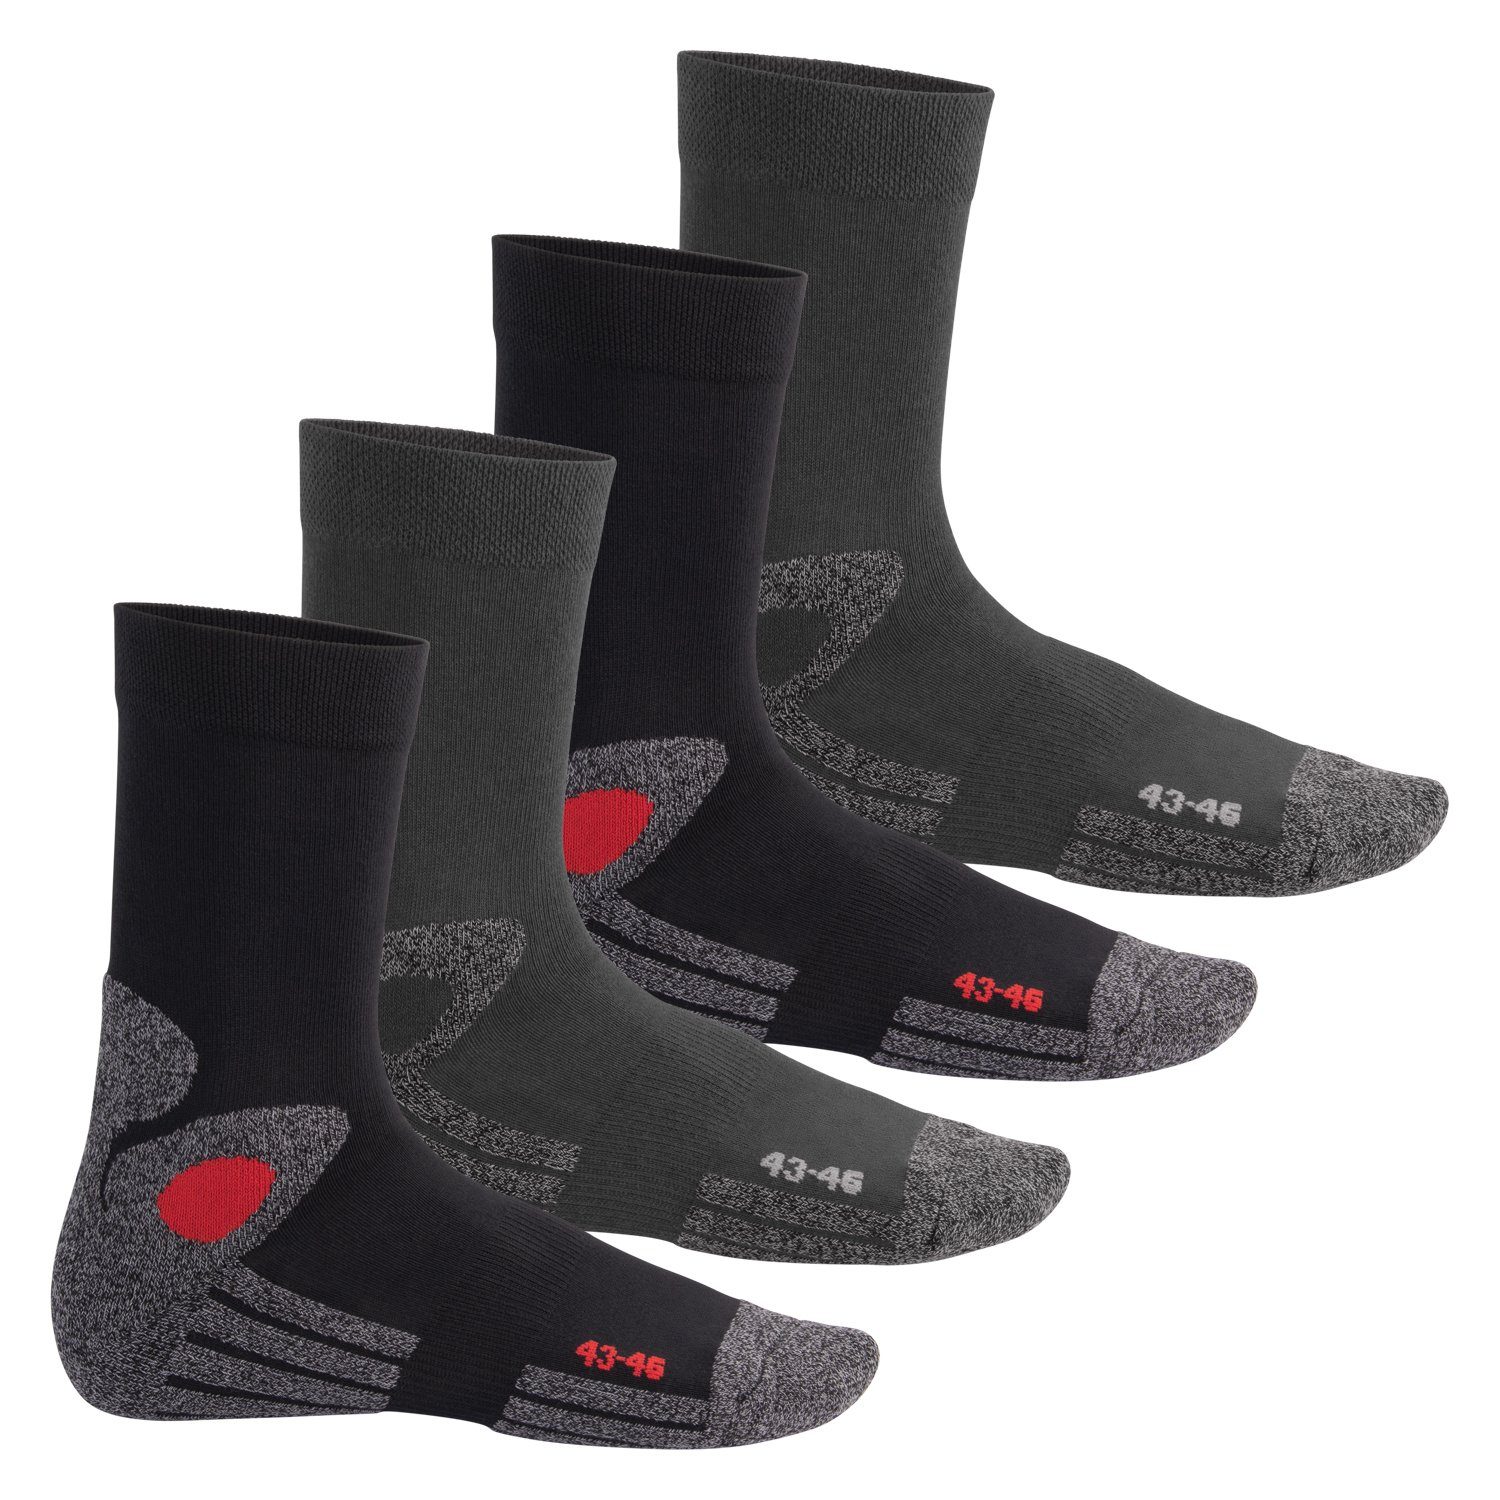 celodoro Arbeitssocken Trekking-Socken für Damen & Herren (4 Paar) mit Frotteesohle schwarz/grau